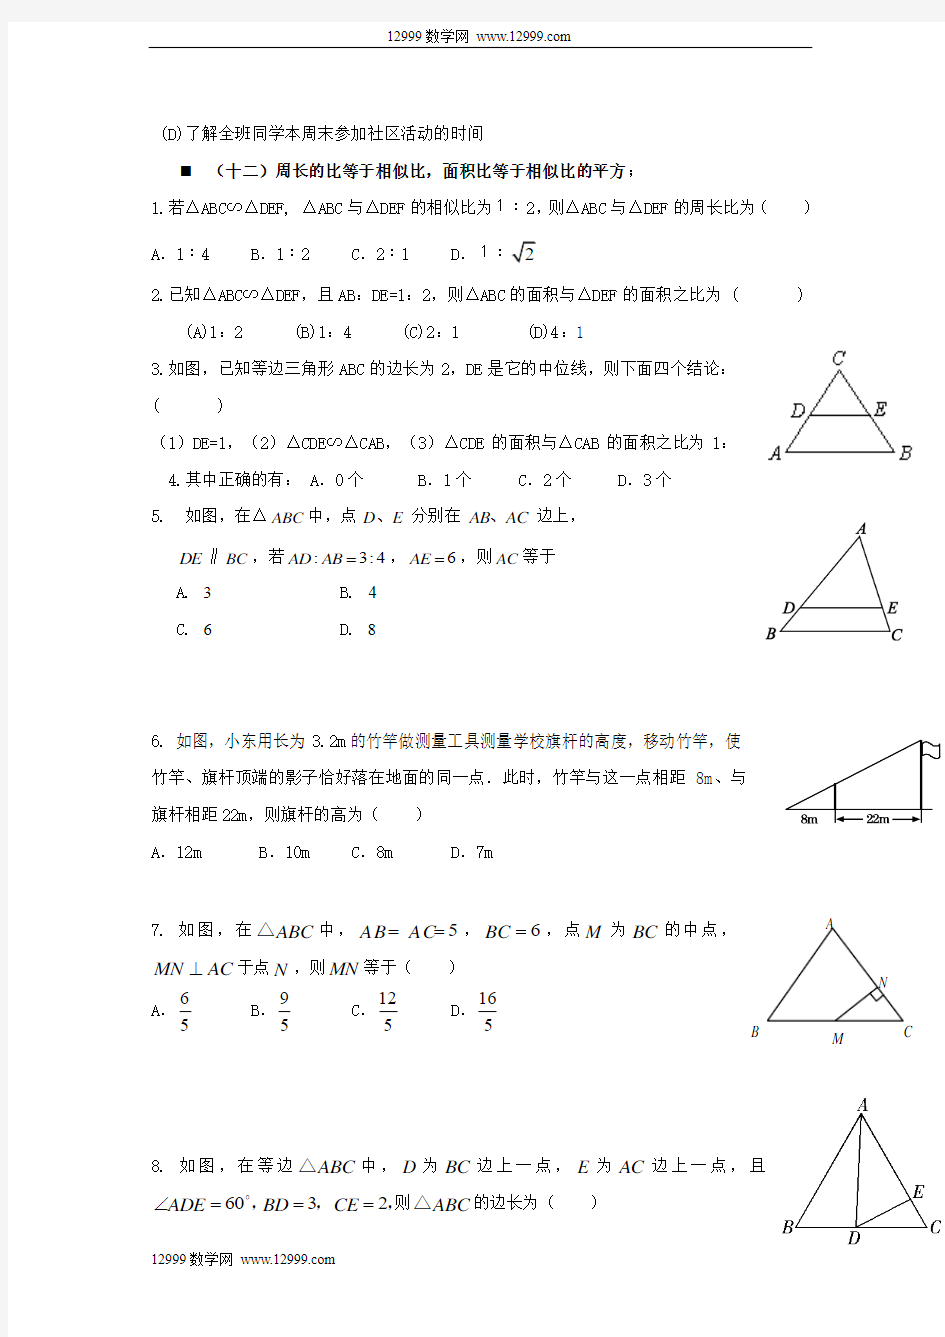 2014年中考数学常考考点(三)